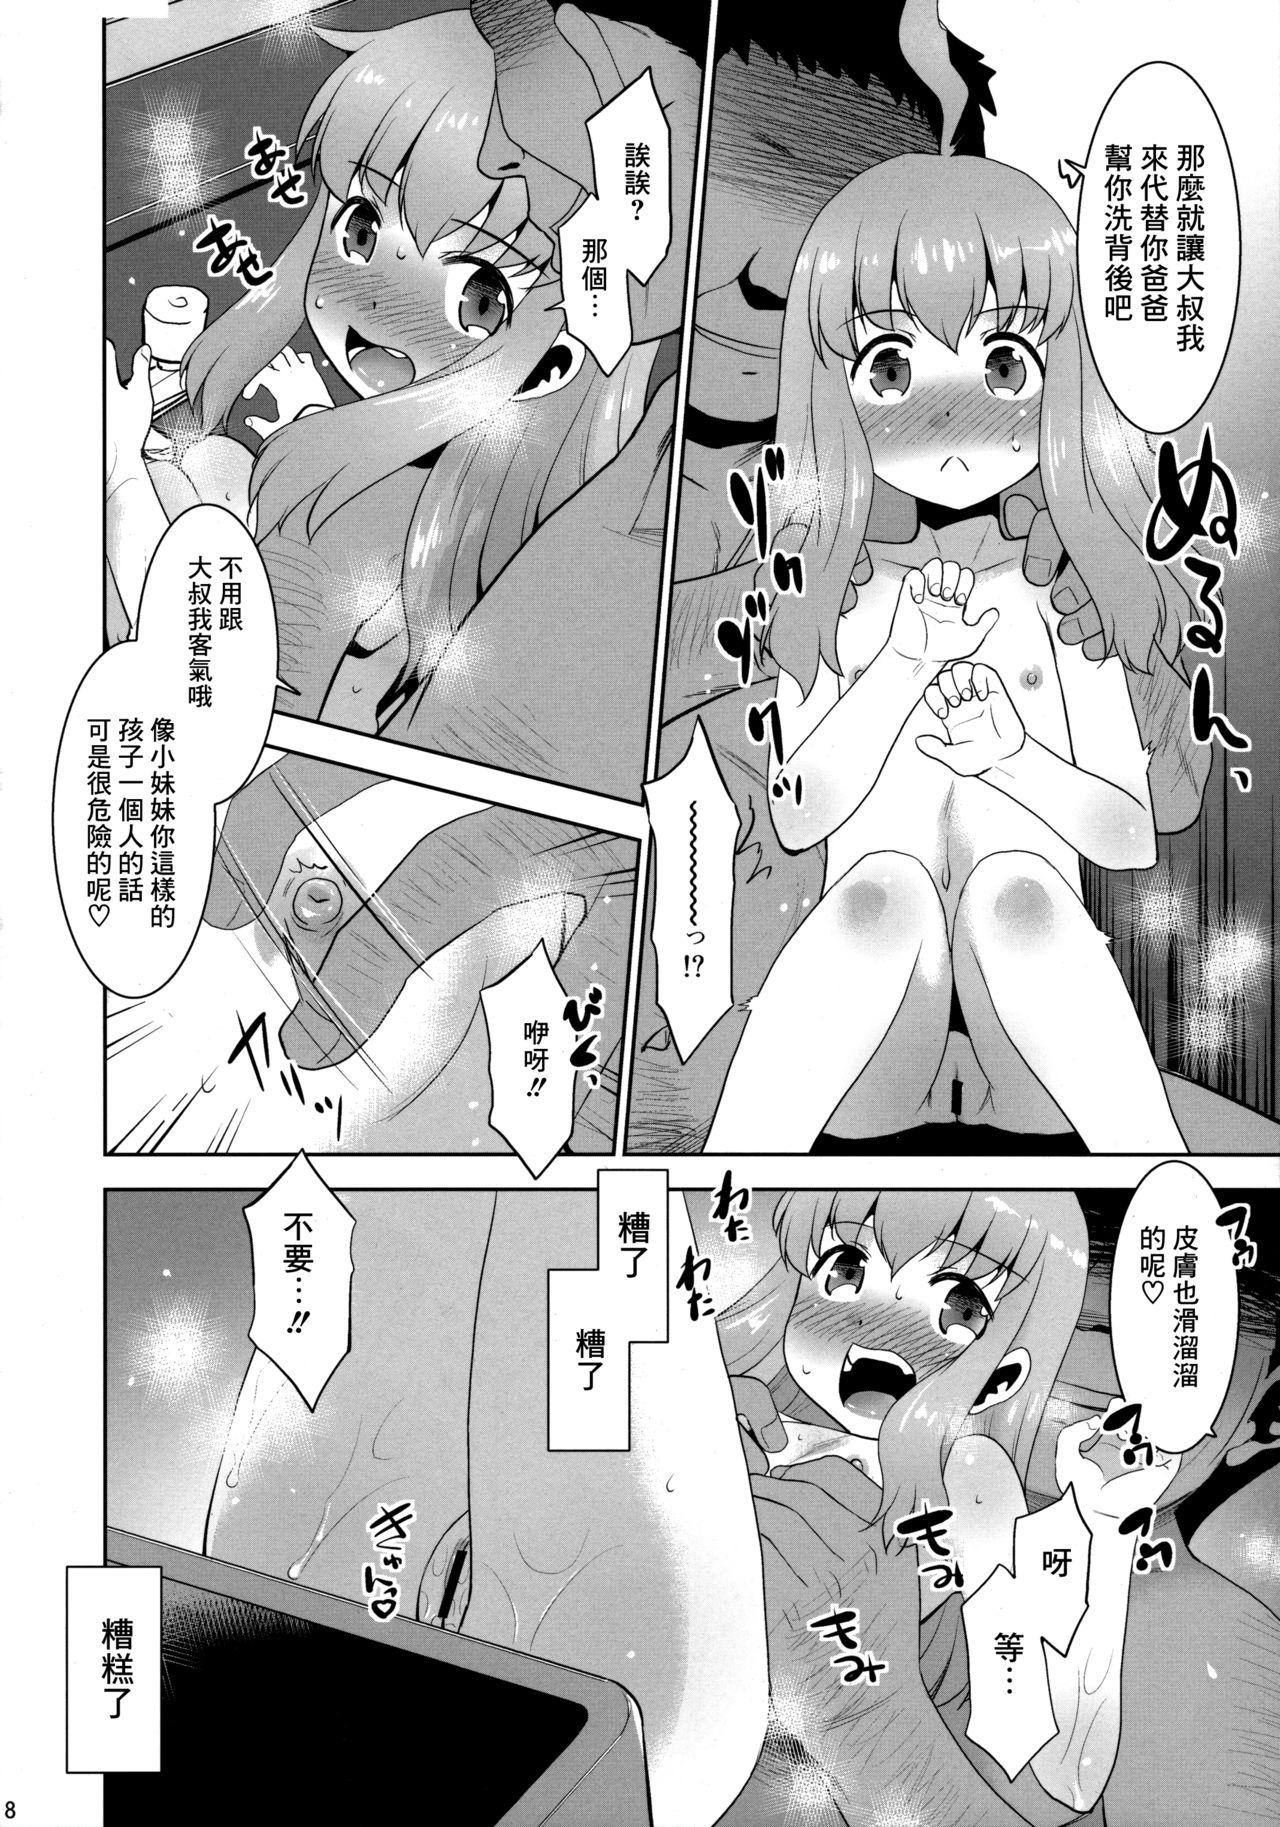 Gagging Toriatsukai Chuui!! Mahou no Datsumou Cream. 4 - Original Petite Teenager - Page 8